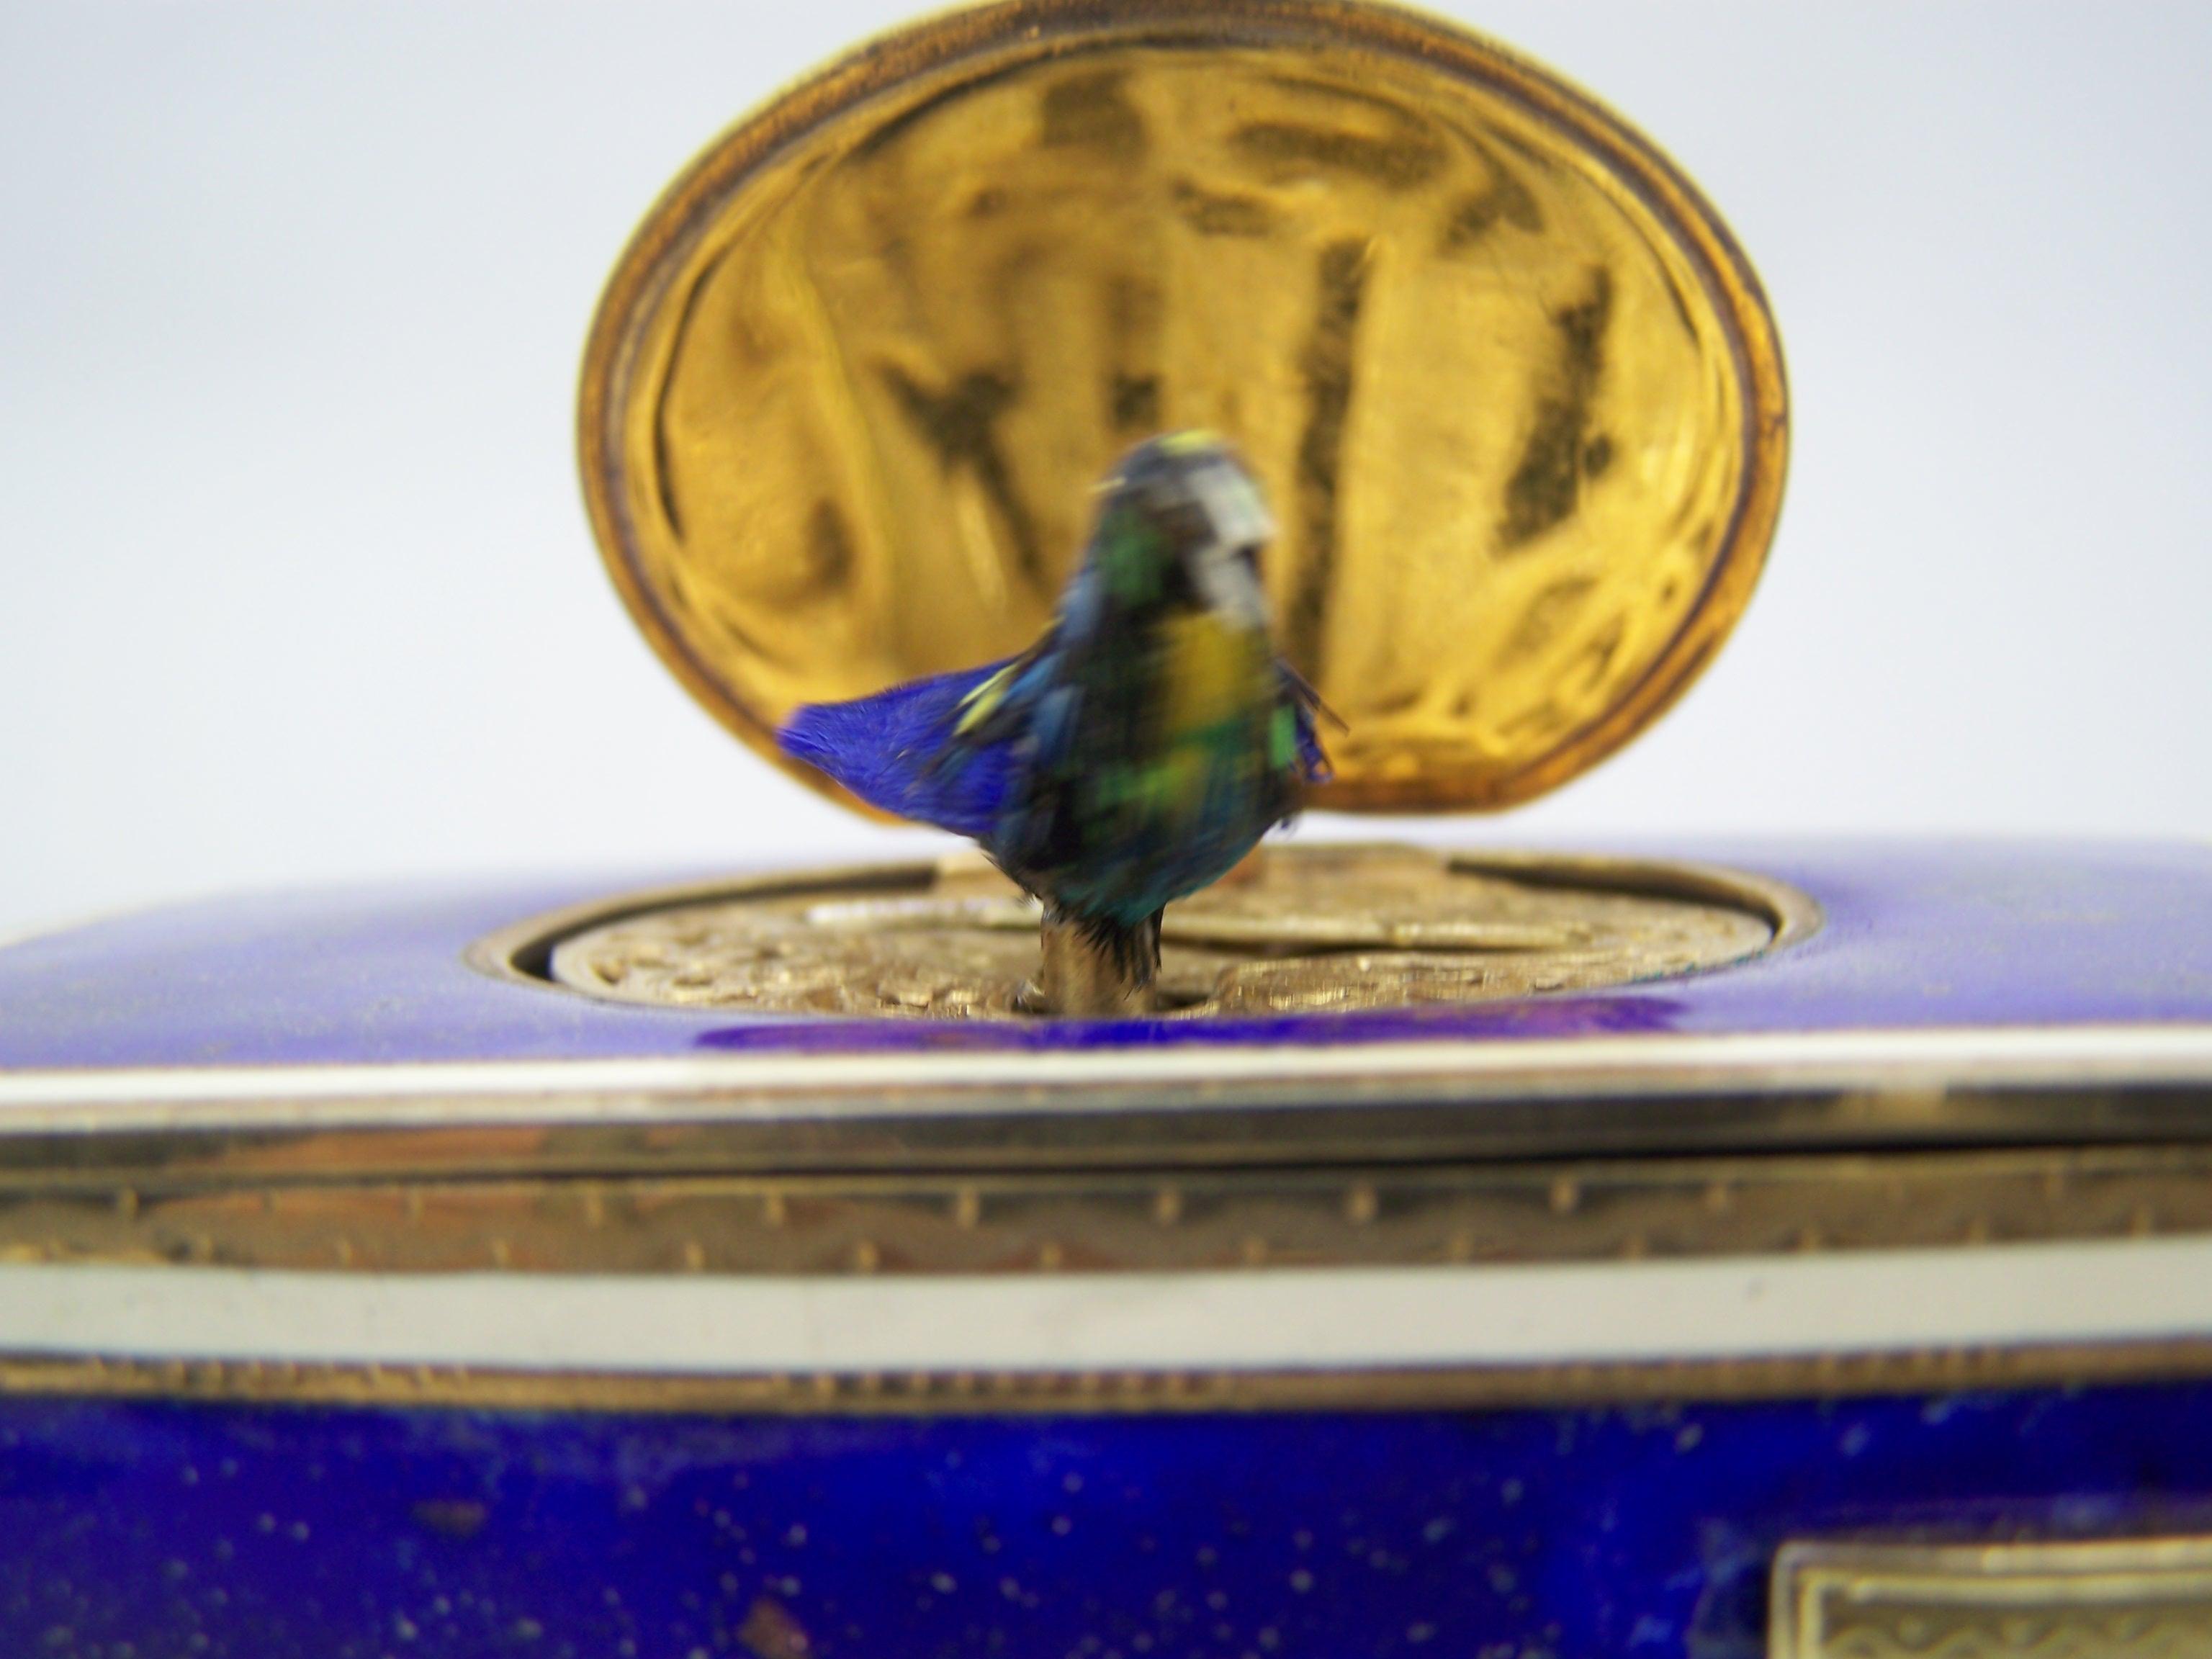 Boîte à oiseaux chantant de K Griesbaum dans un étui de guilde et émail floqué d'or bleu 5